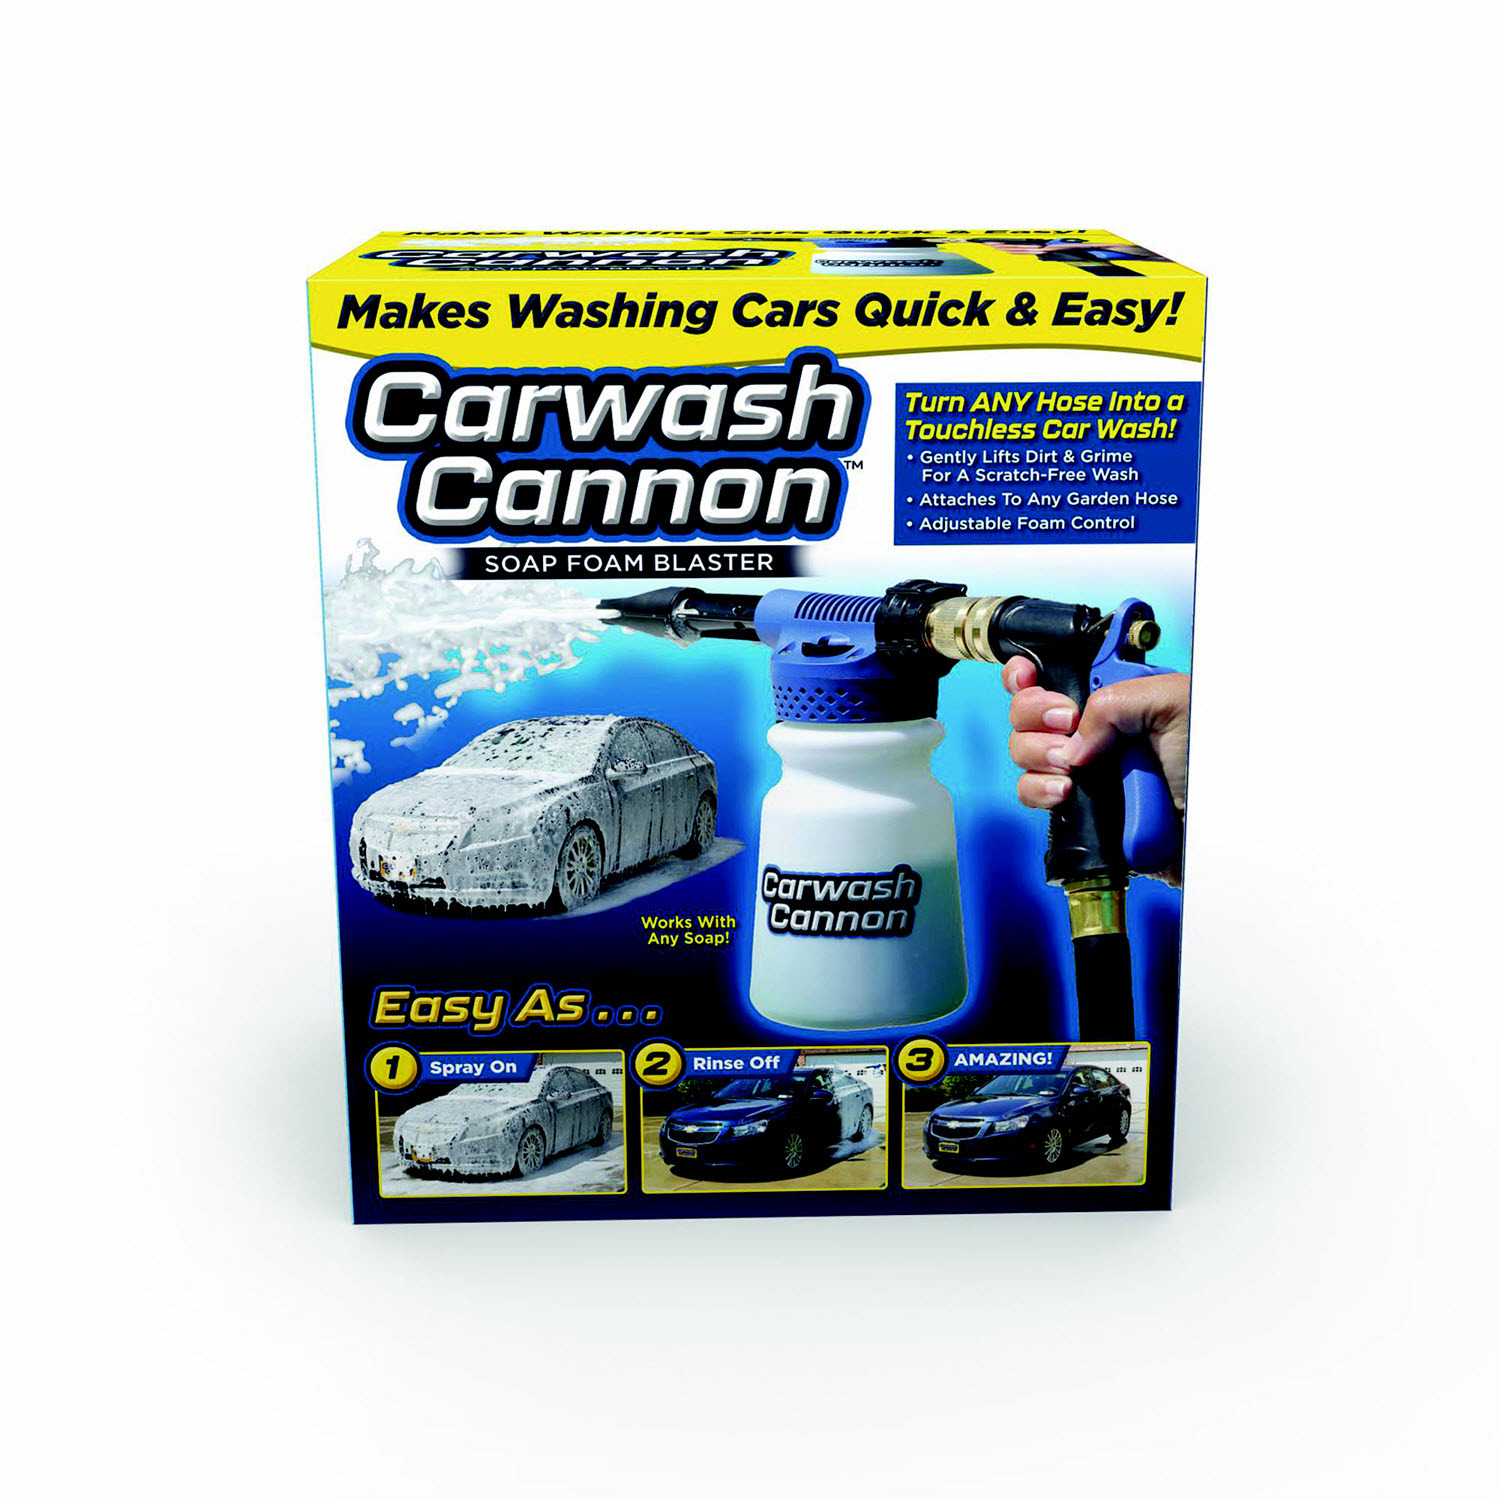 Carwash Cannon The Foam Blasting Car Wash System